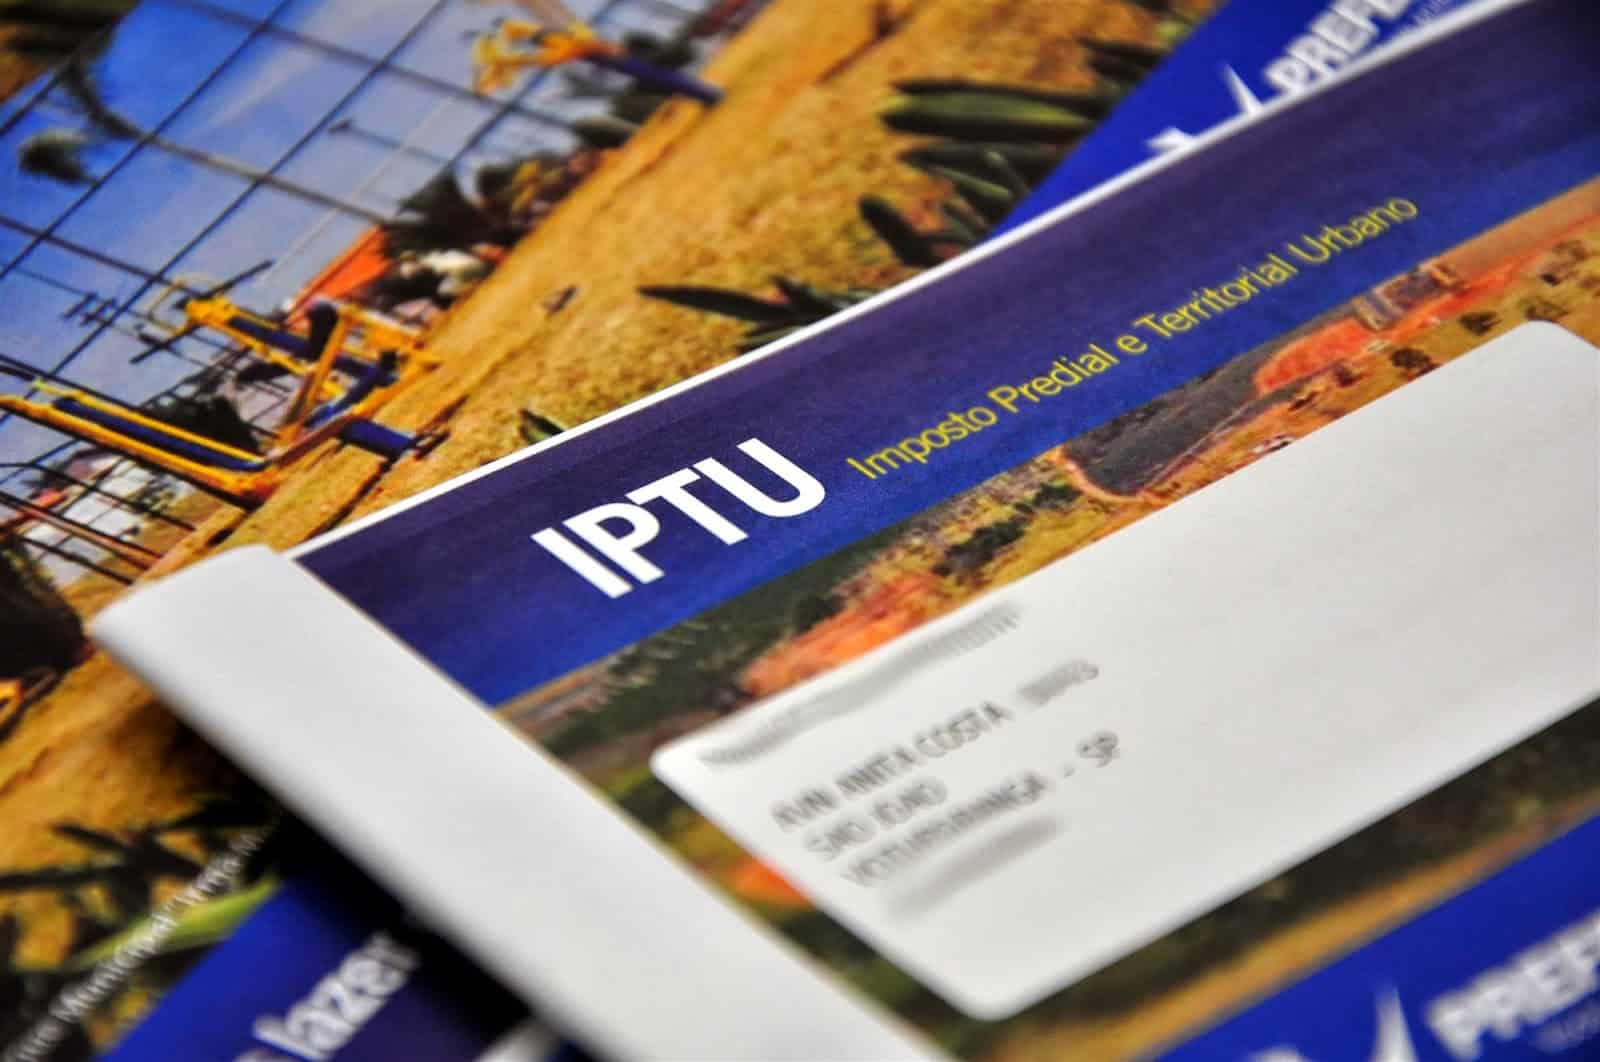 IPTU Recife 2021: Último mês para cadastrar redução de 50% no pagamento